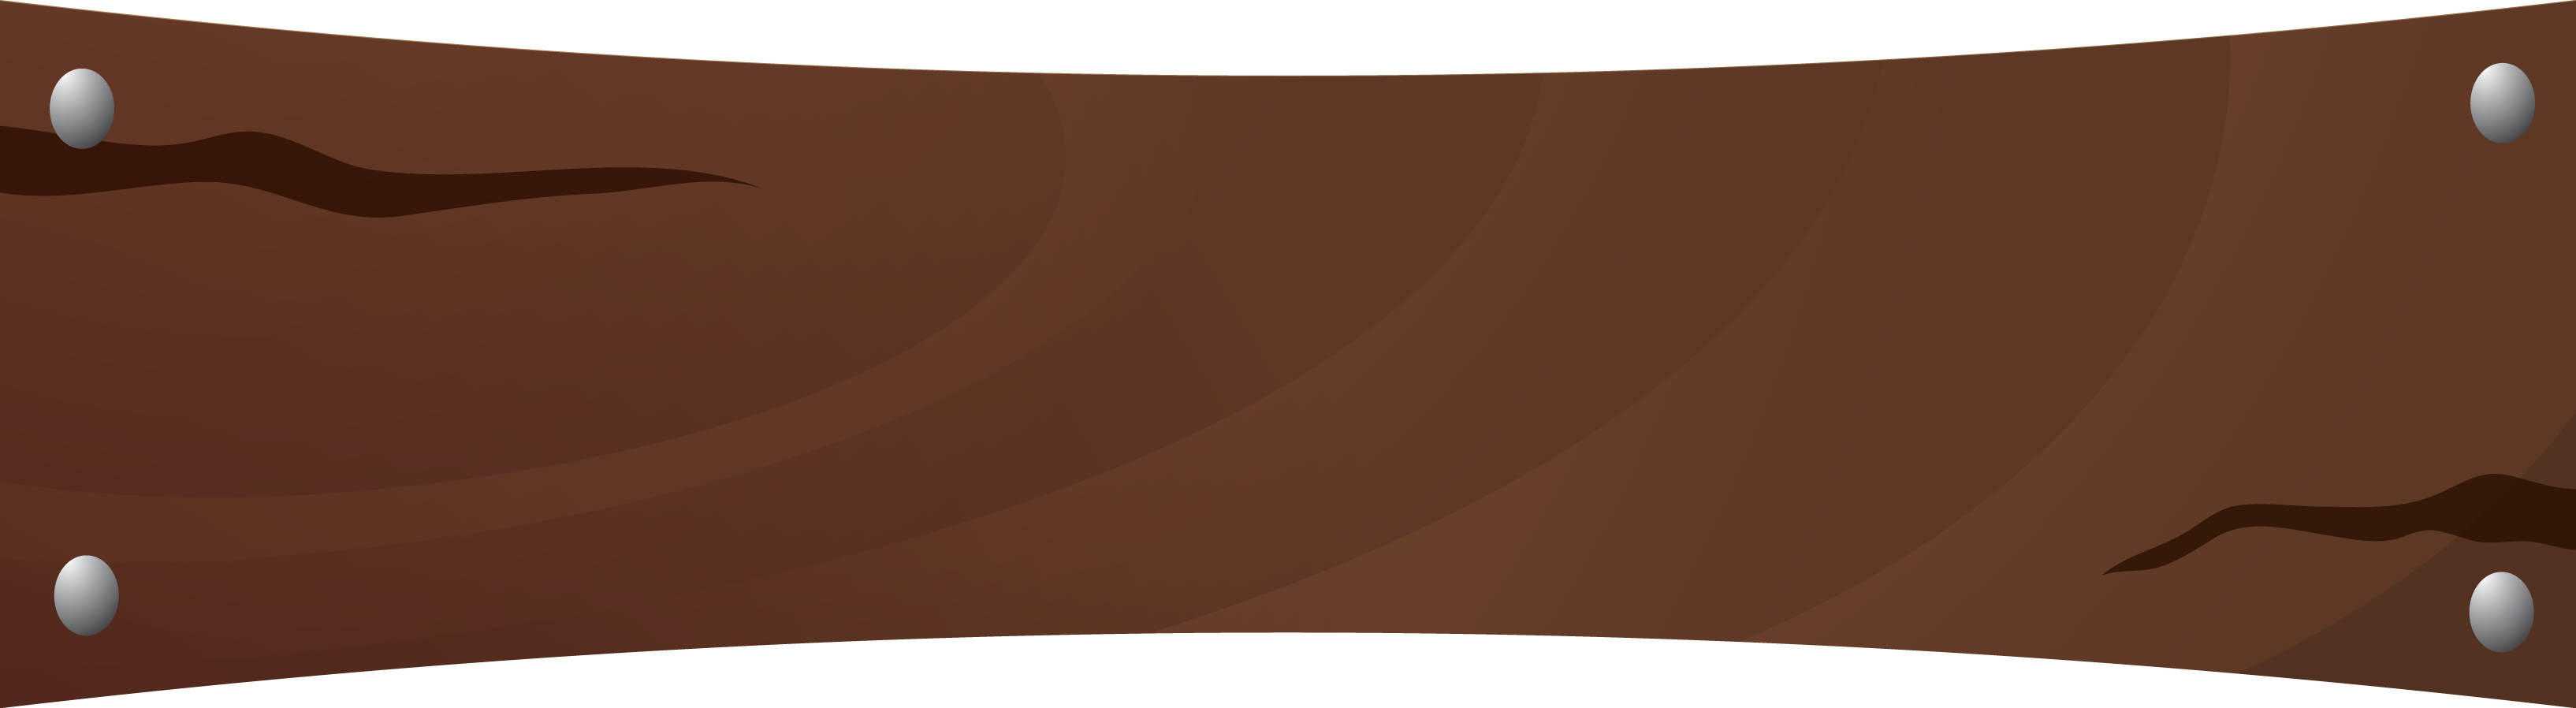 Banner Brown PNG Imagen de fondo